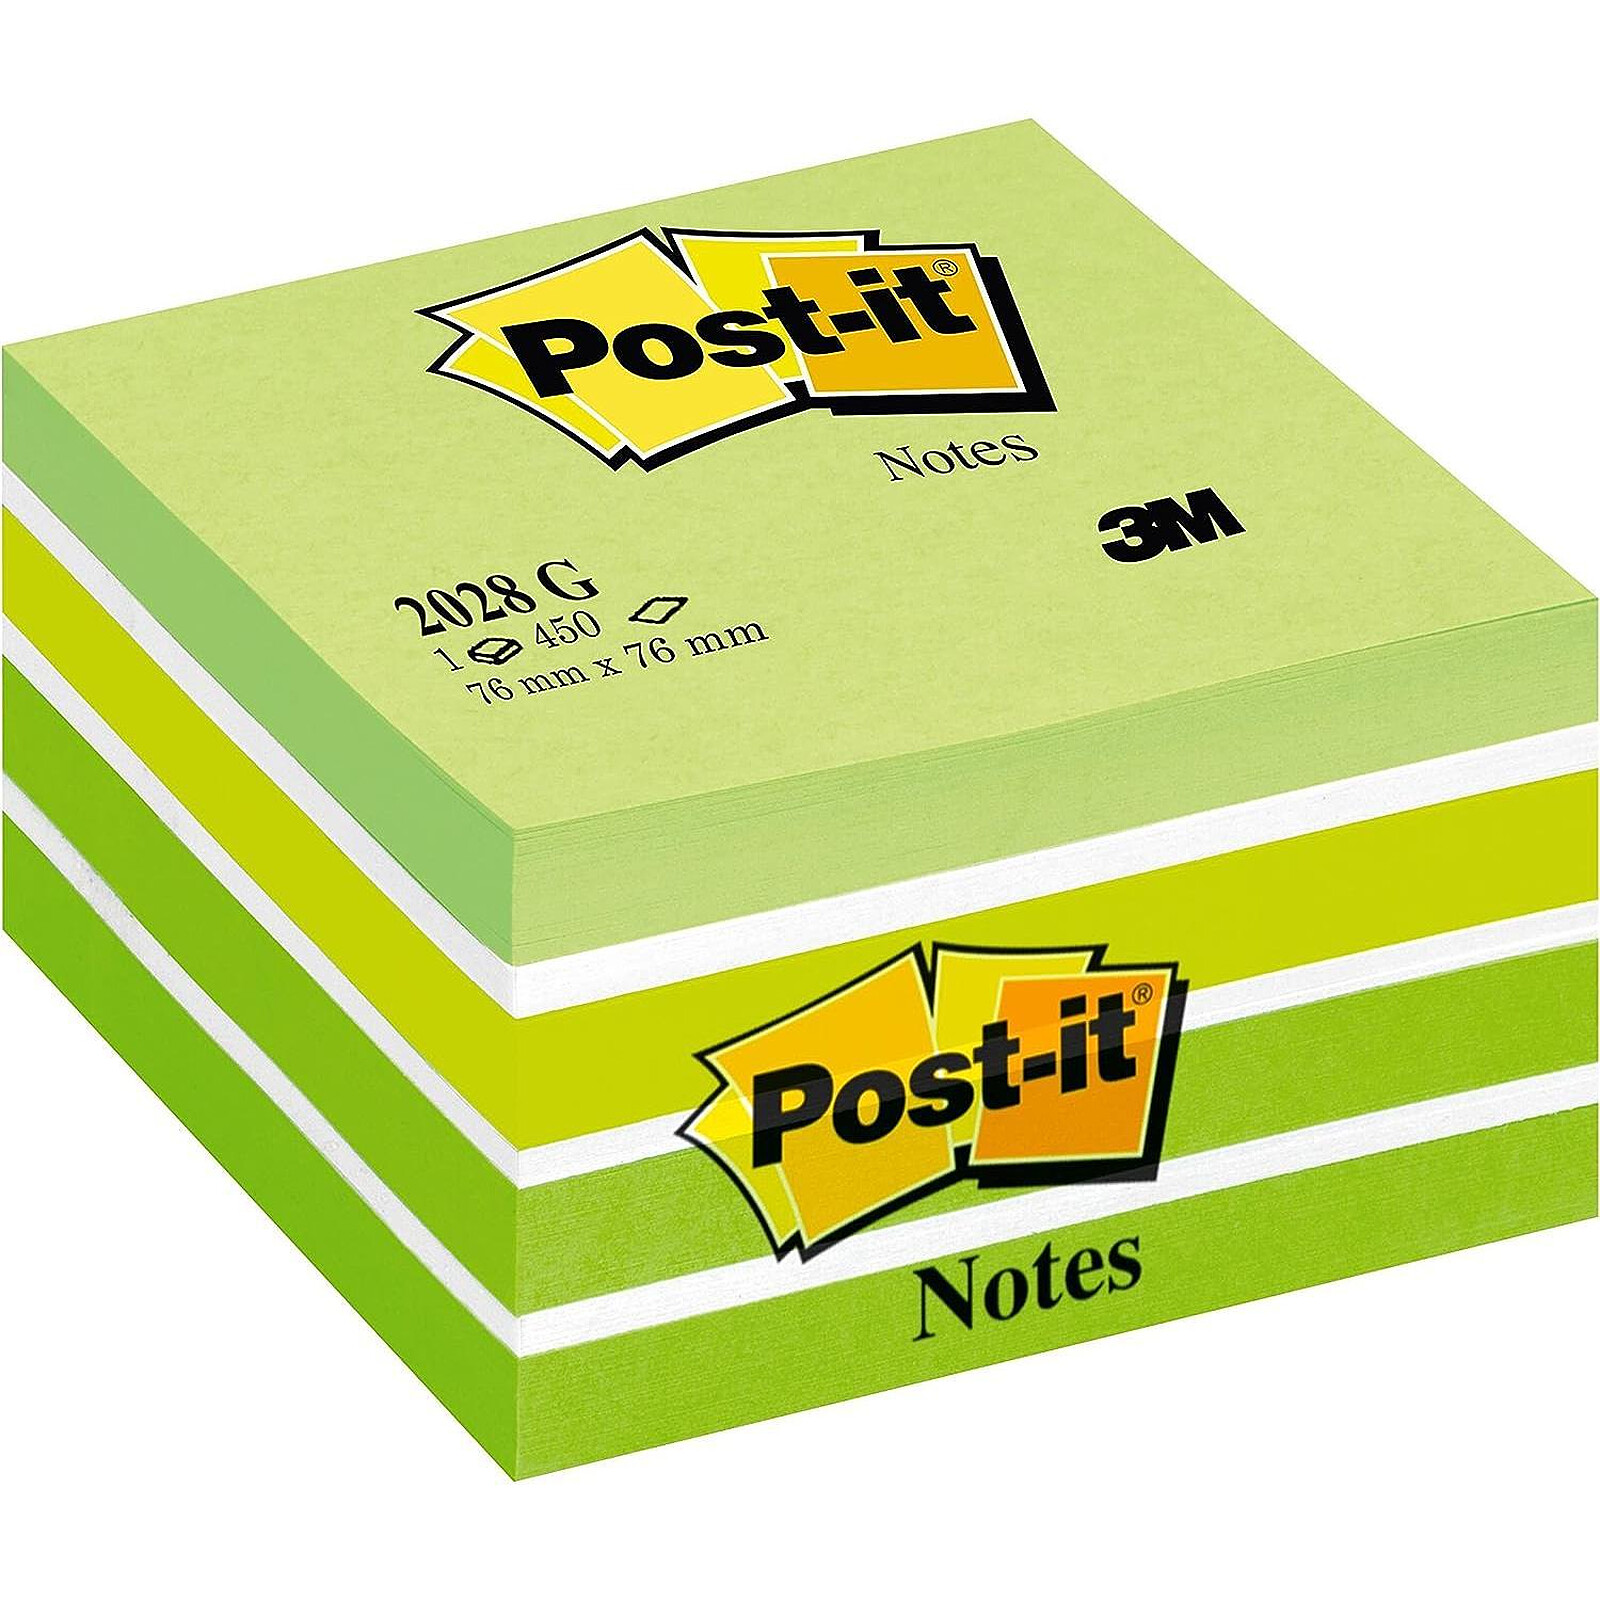 Z-NOTES ROSE NÉON / ROSE PASTEL POST-IT 76 X 76 MM - BLOC DE 100 FEUILLES